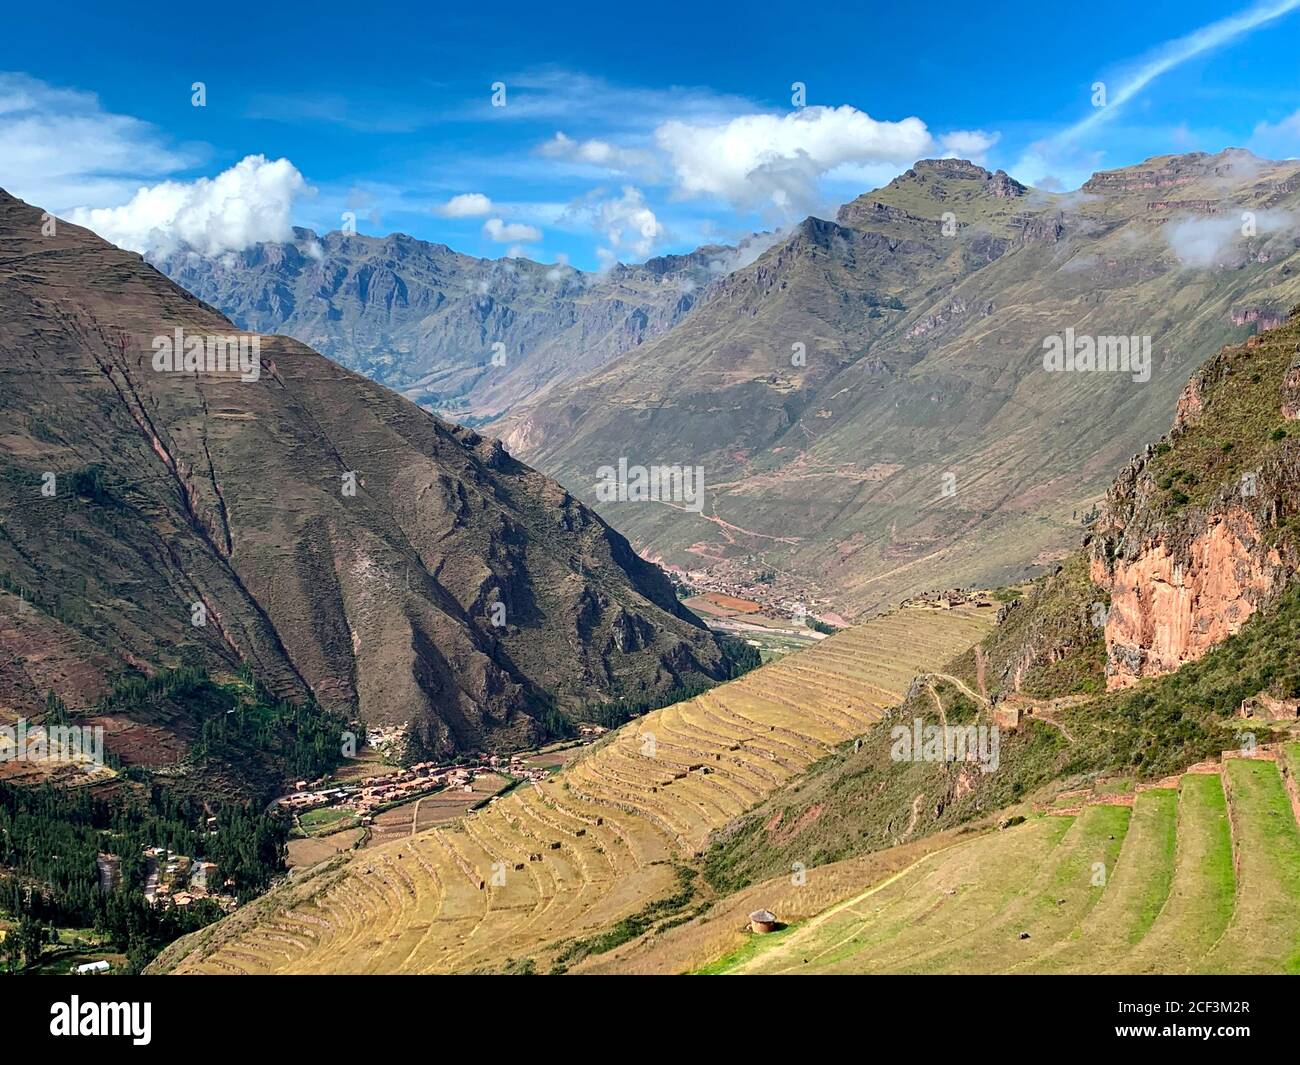 Wunderschönes heiliges Tal in Peru. Sagrado Valle. Urubamba Tal. Blick auf Andenes, berühmte alte landwirtschaftliche Terrassen. Tolle Bergkette. Anden Stockfoto